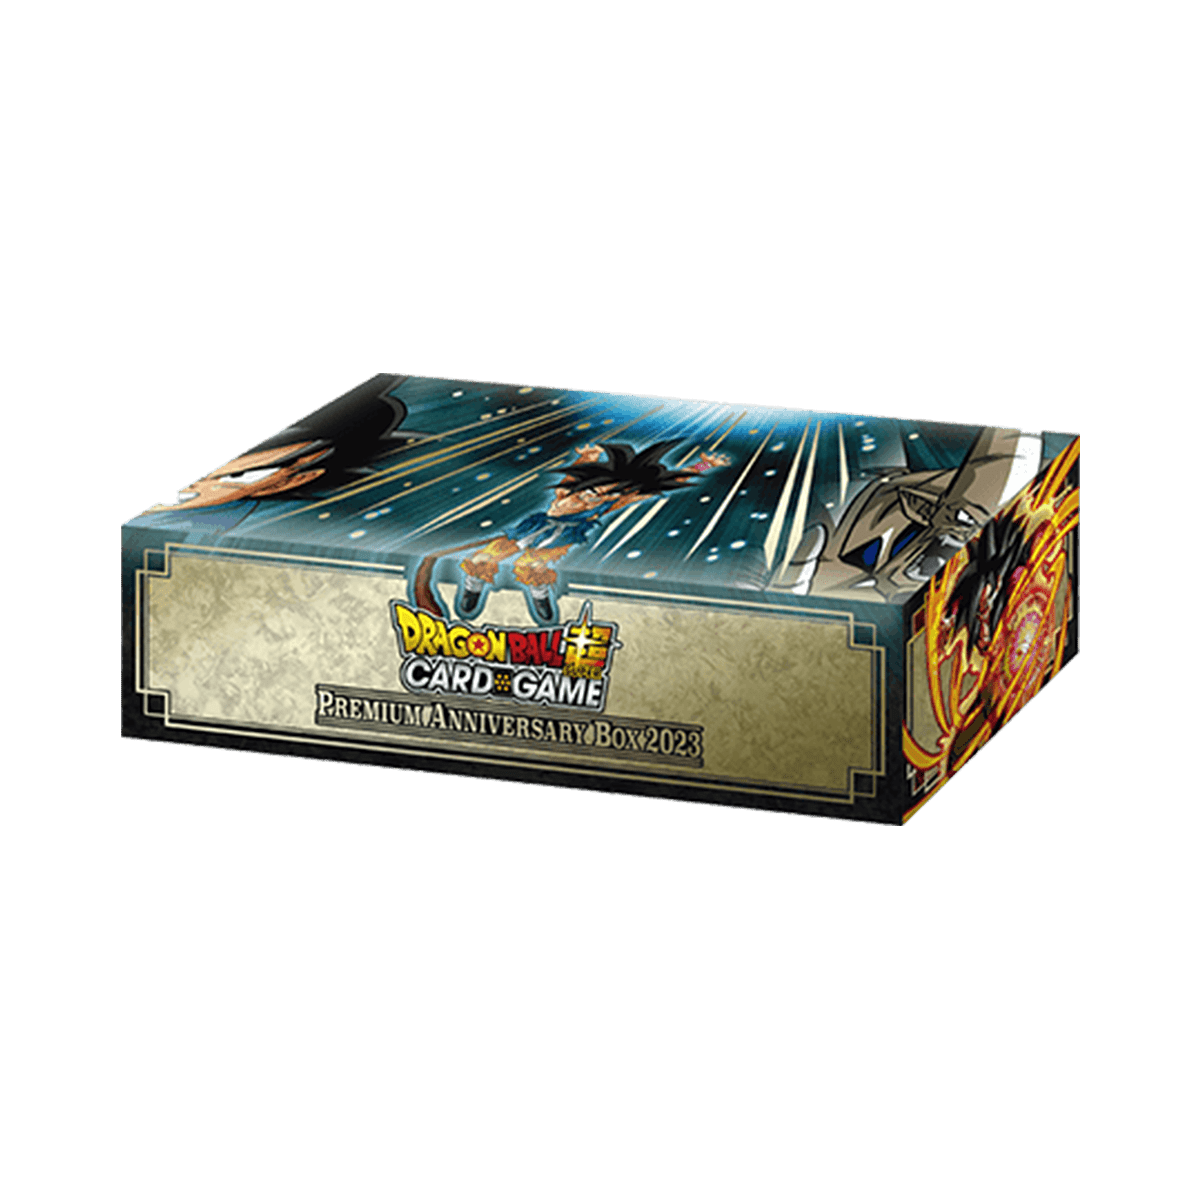 Dragon Ball Super Card Game - Premium Anniversary Box 2023 BE23 - Cardmaniac.ch